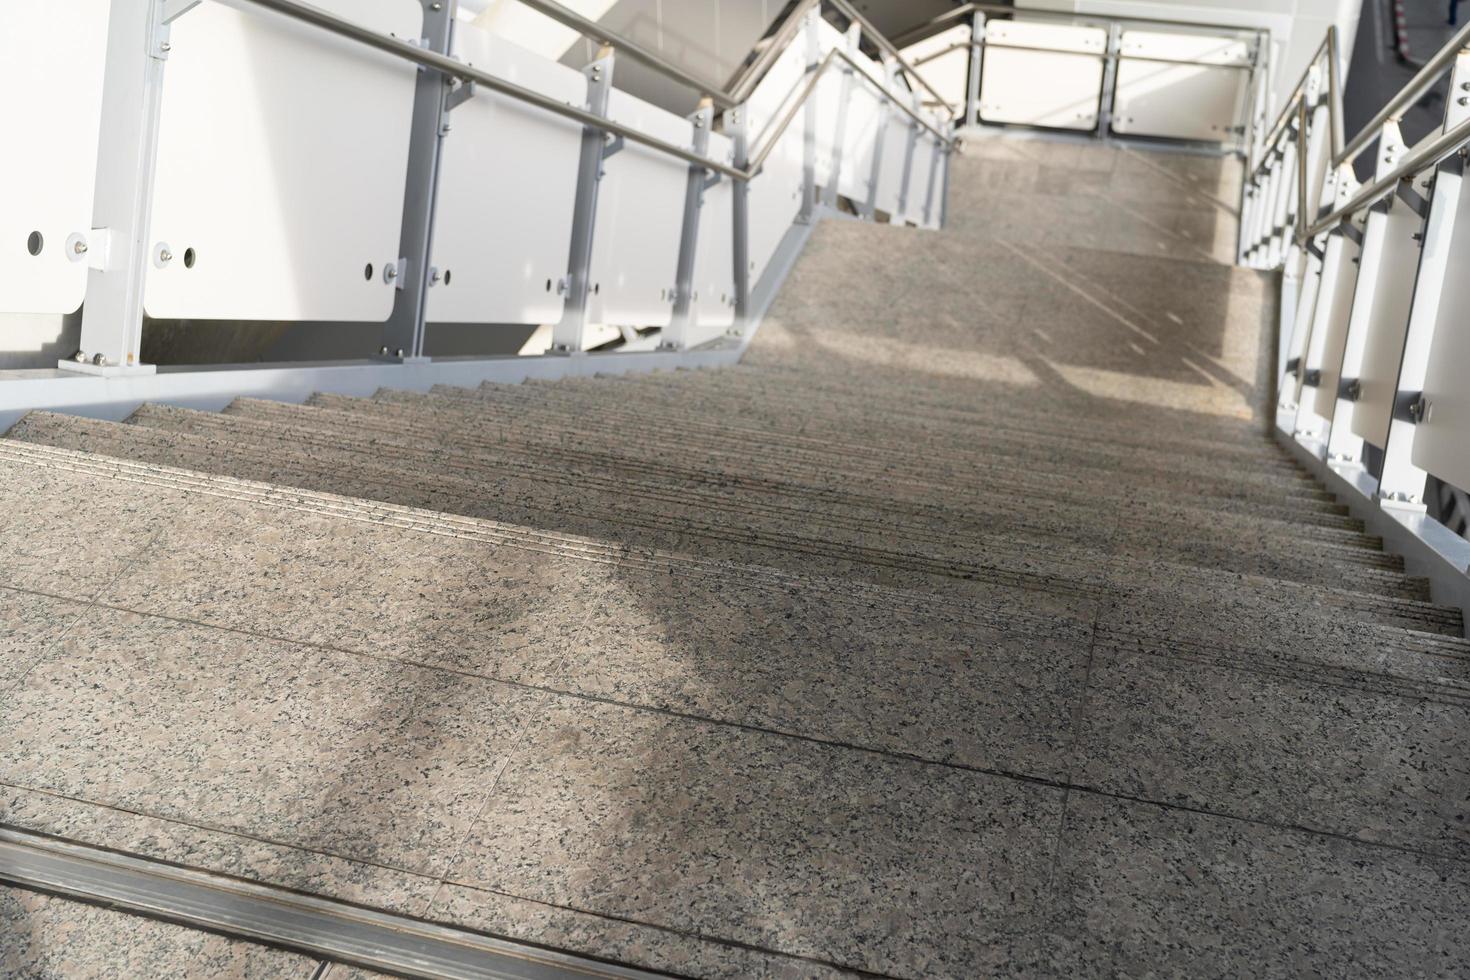 öffentliche Treppe am Bahnhof oder Einkaufszentrum für Ausgang, Eingang. Treppe in der U-Bahn mit sauberem Stahlhandlauf. eine leere Treppe an einer Metrostation foto